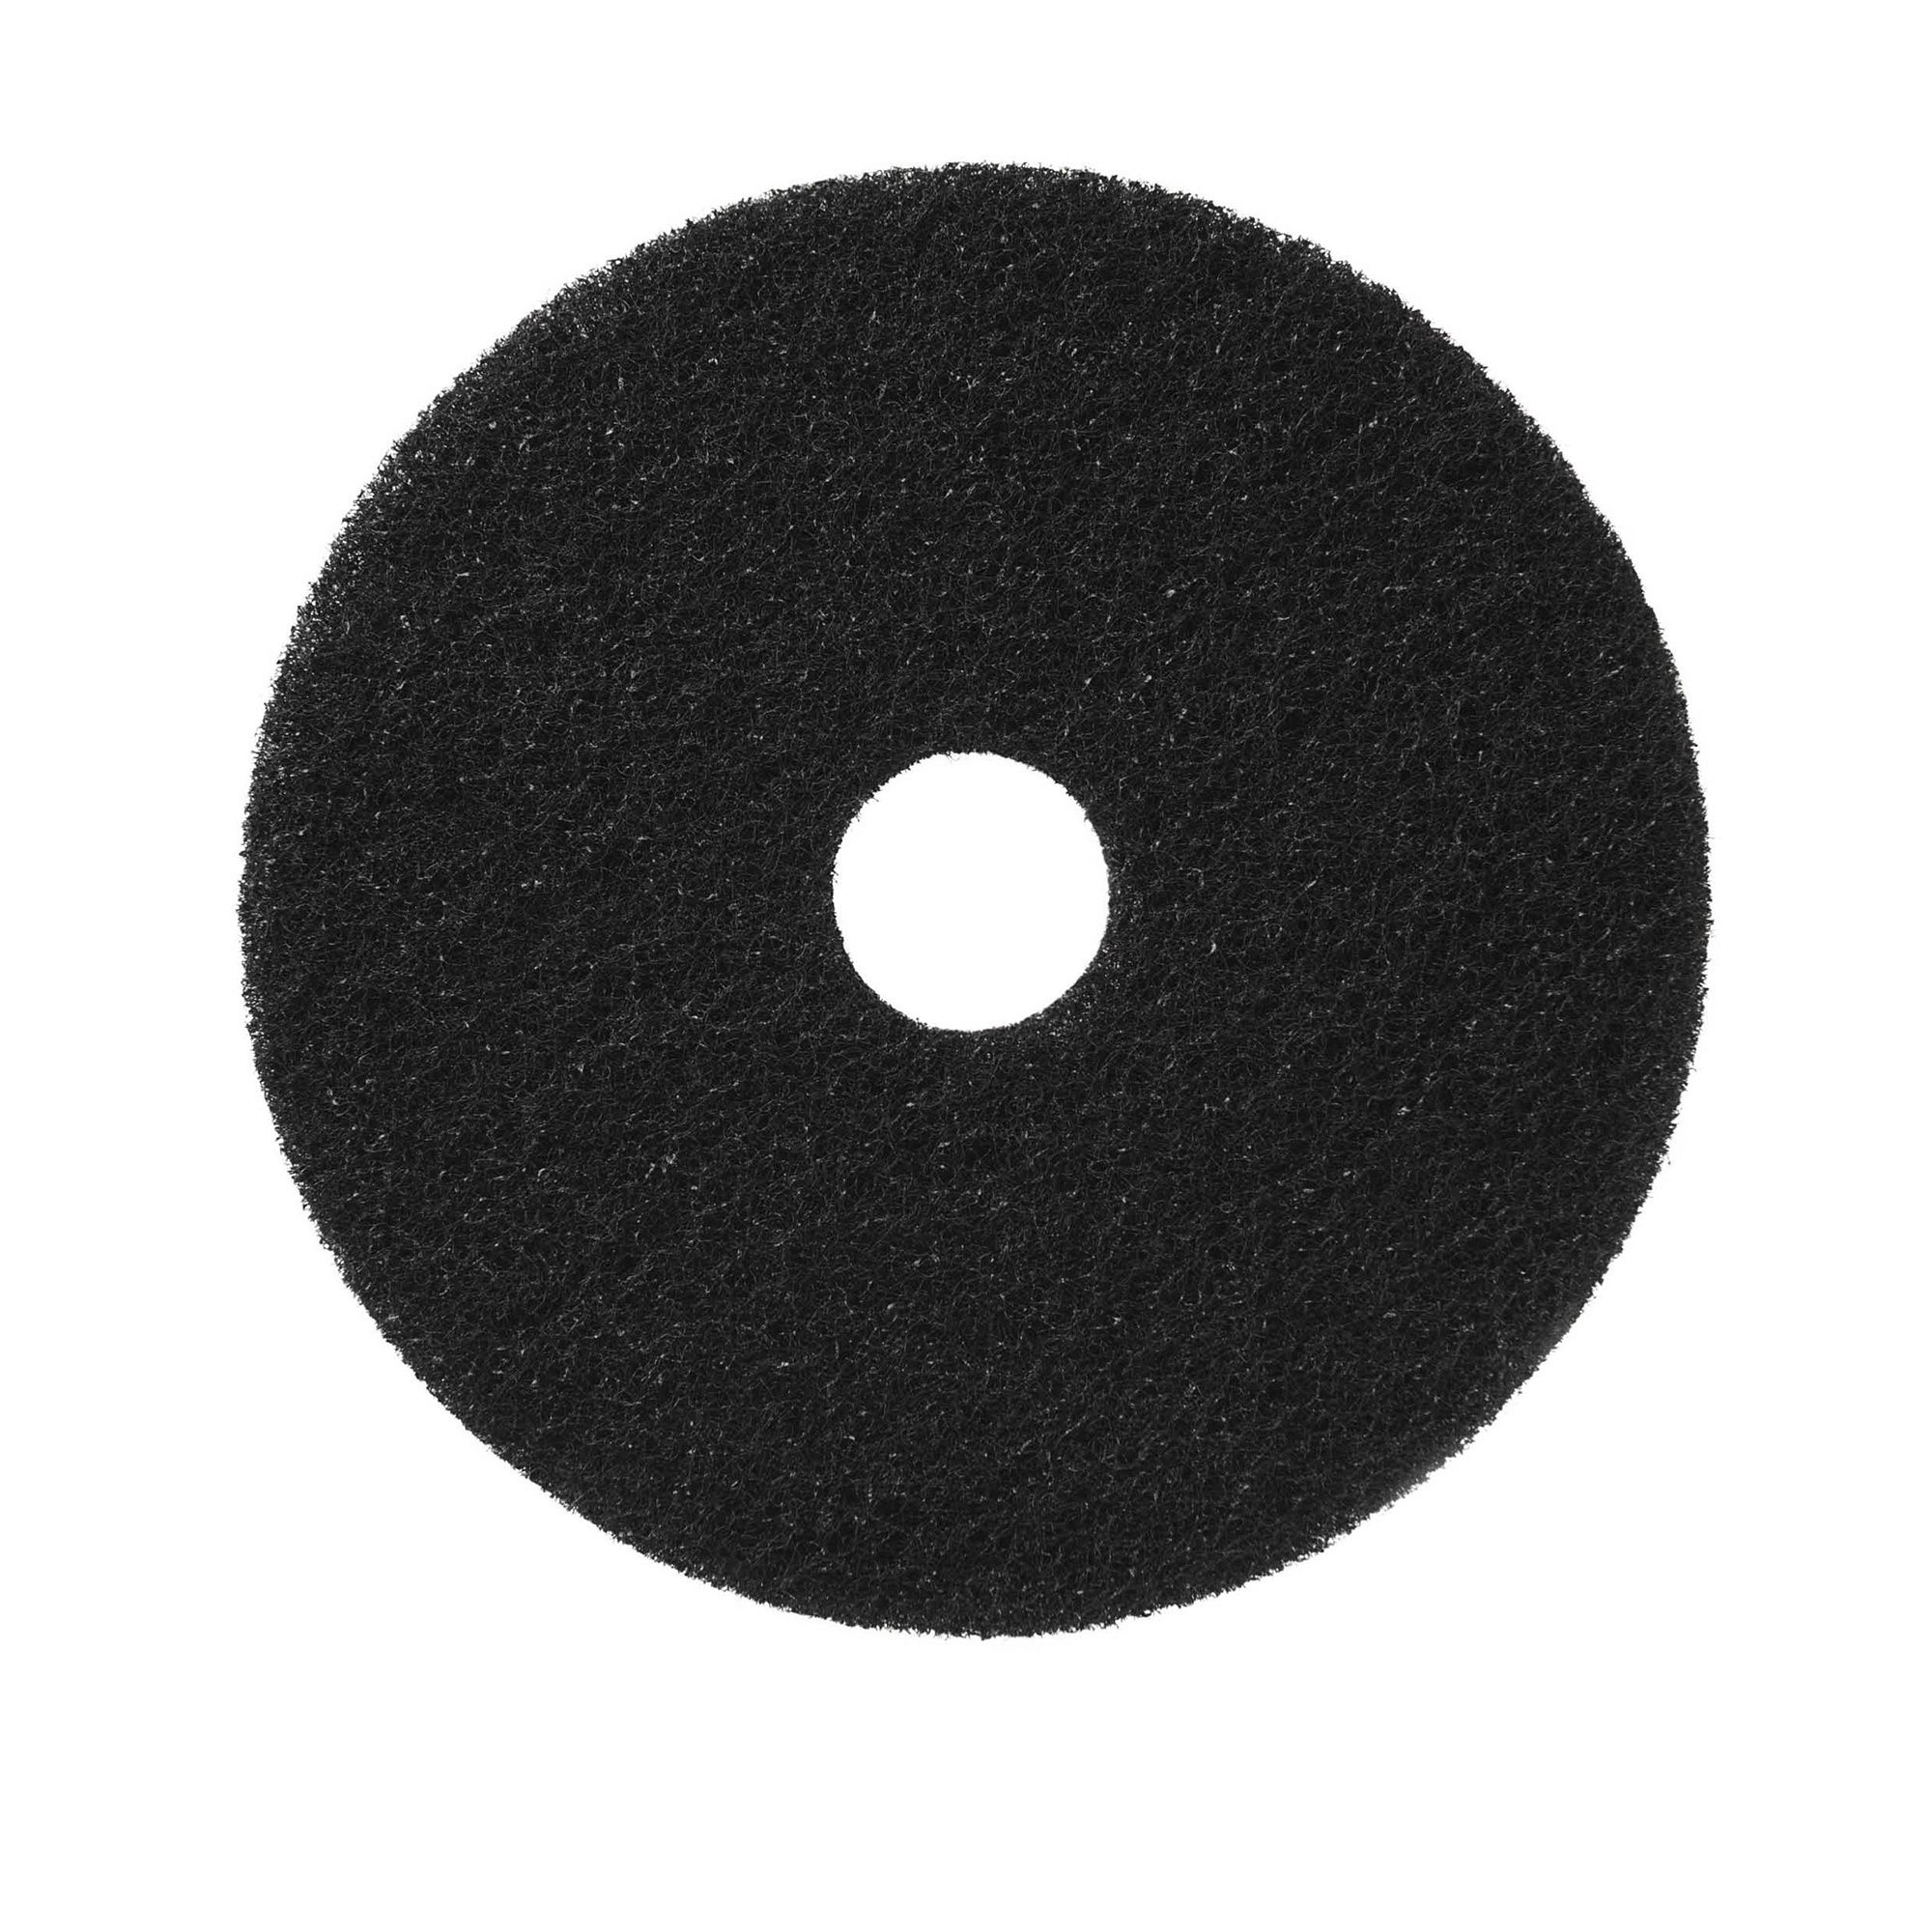 NuPad zwart (strippen met chemie), per 5 stuks, 17 inch / 432 mm